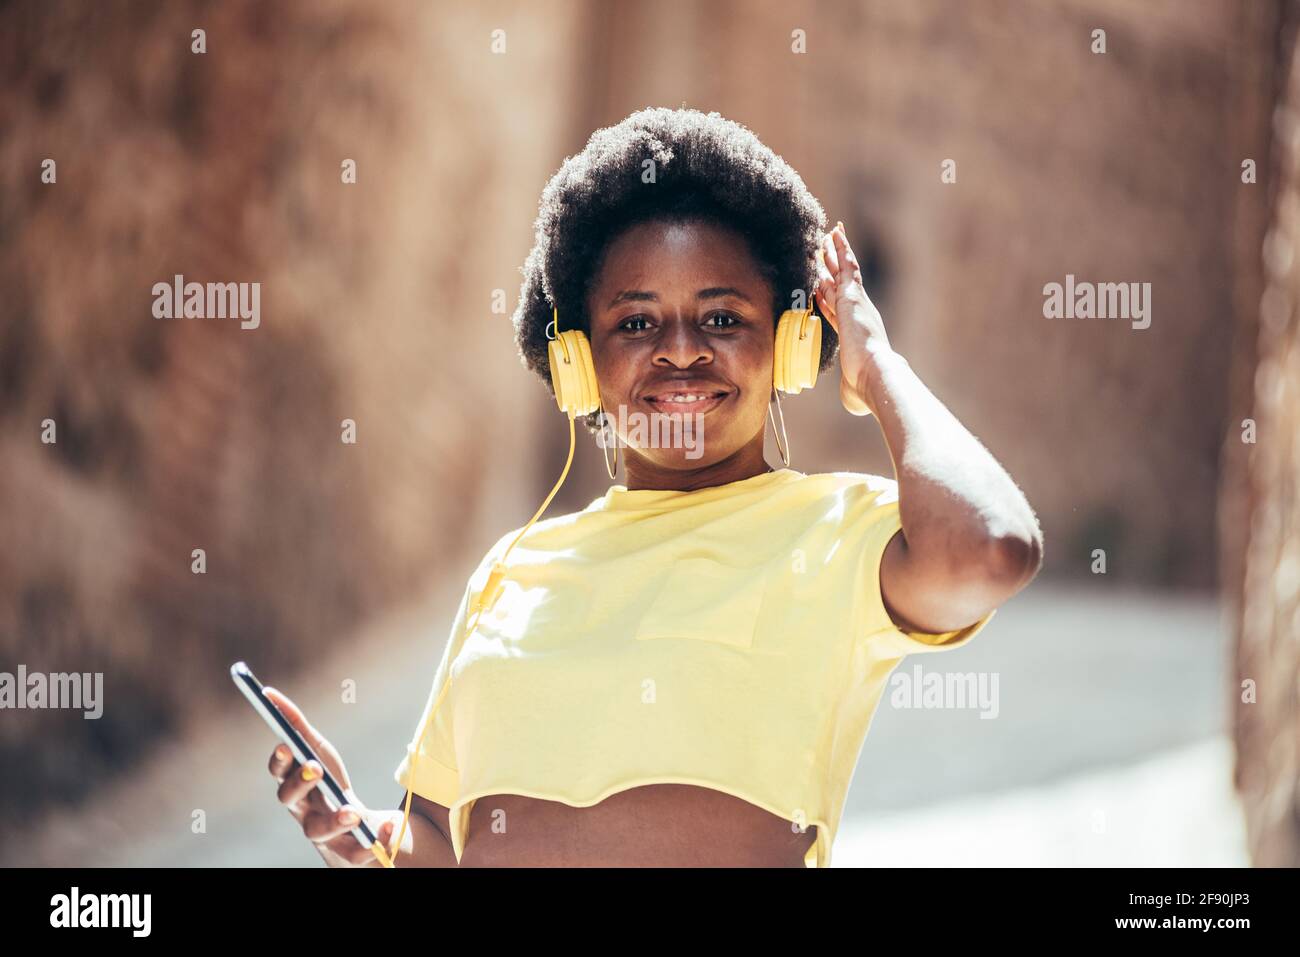 Porträt eines schwarzen Mädchens mit afro Haaren, das in einer alten Stadtstraße Musik hört und tanzt. Stockfoto